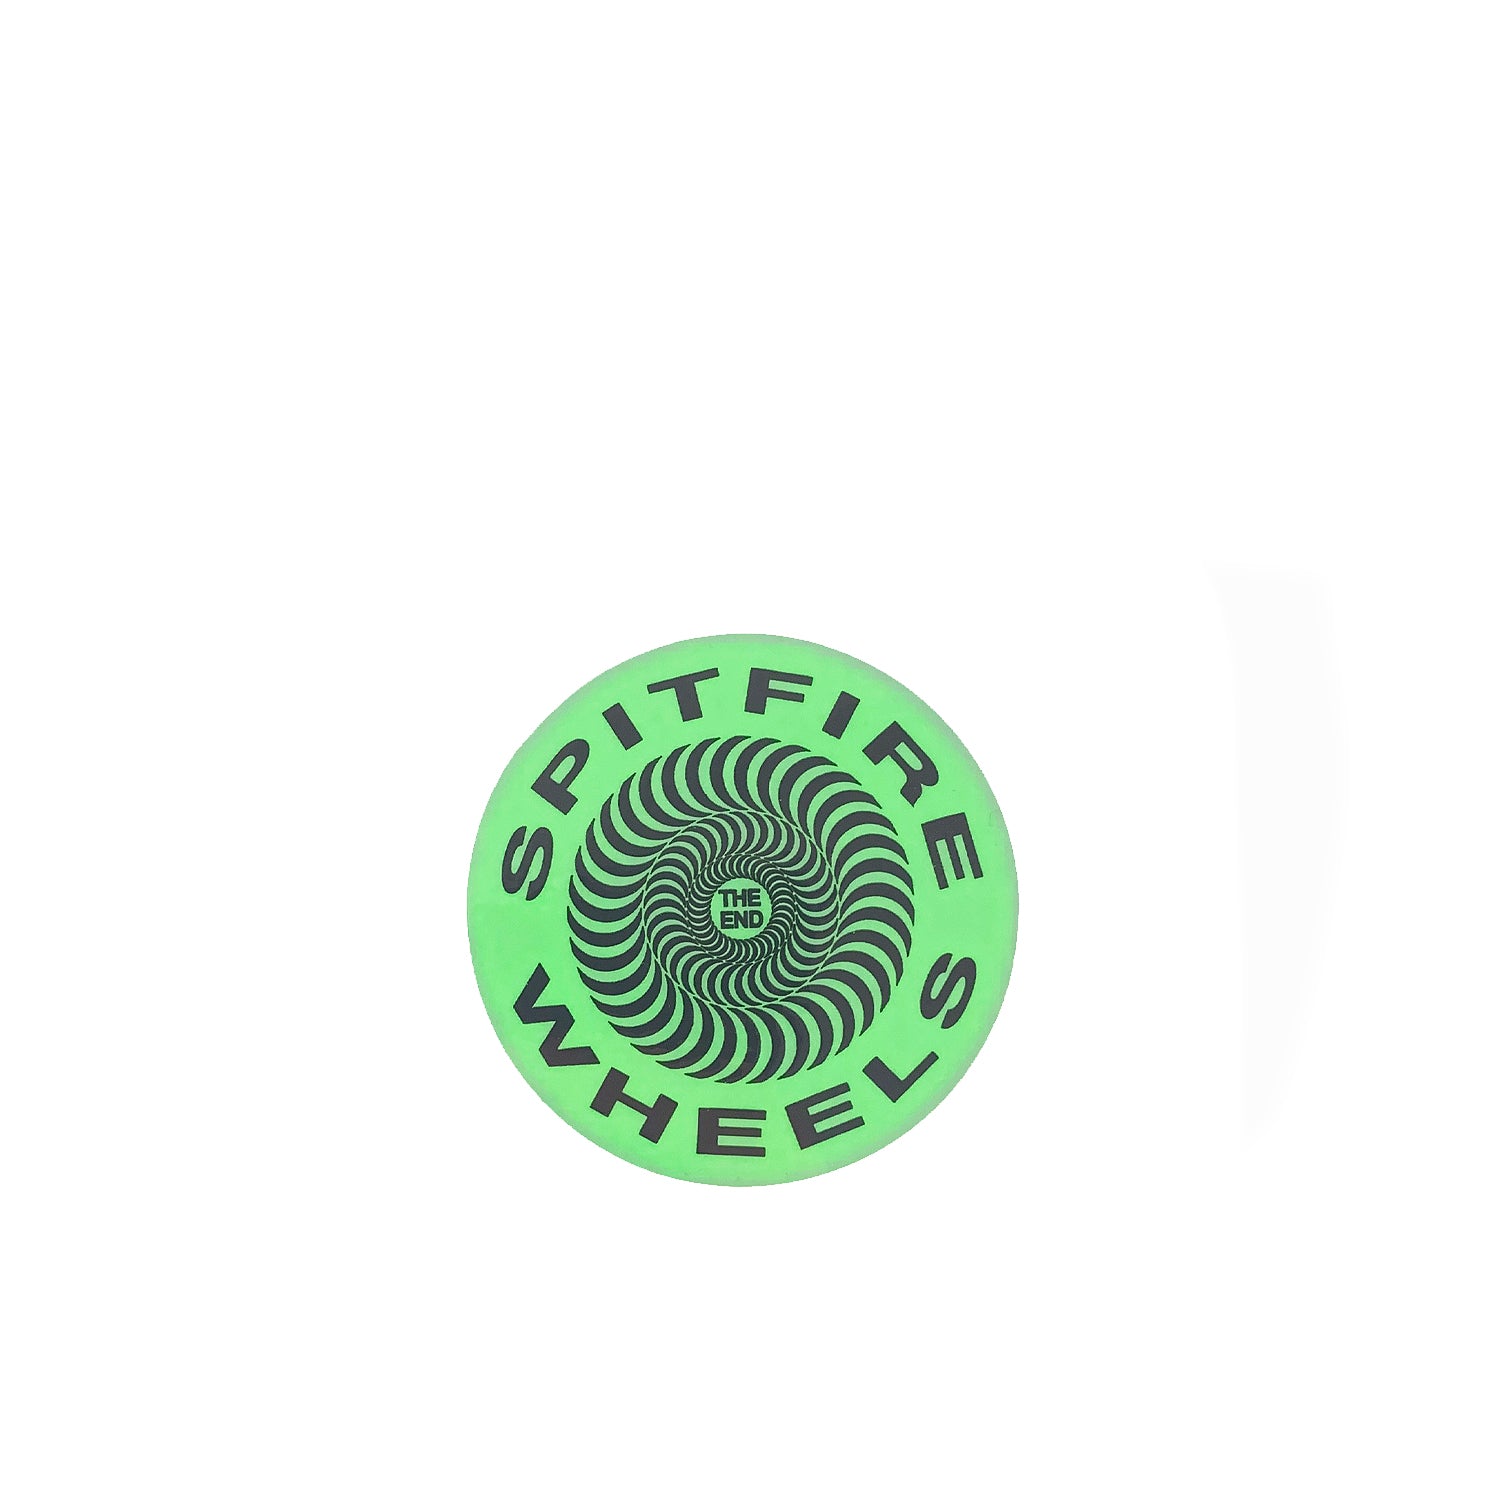 Spitfire Classic Sticker - Green - Prime Delux Store